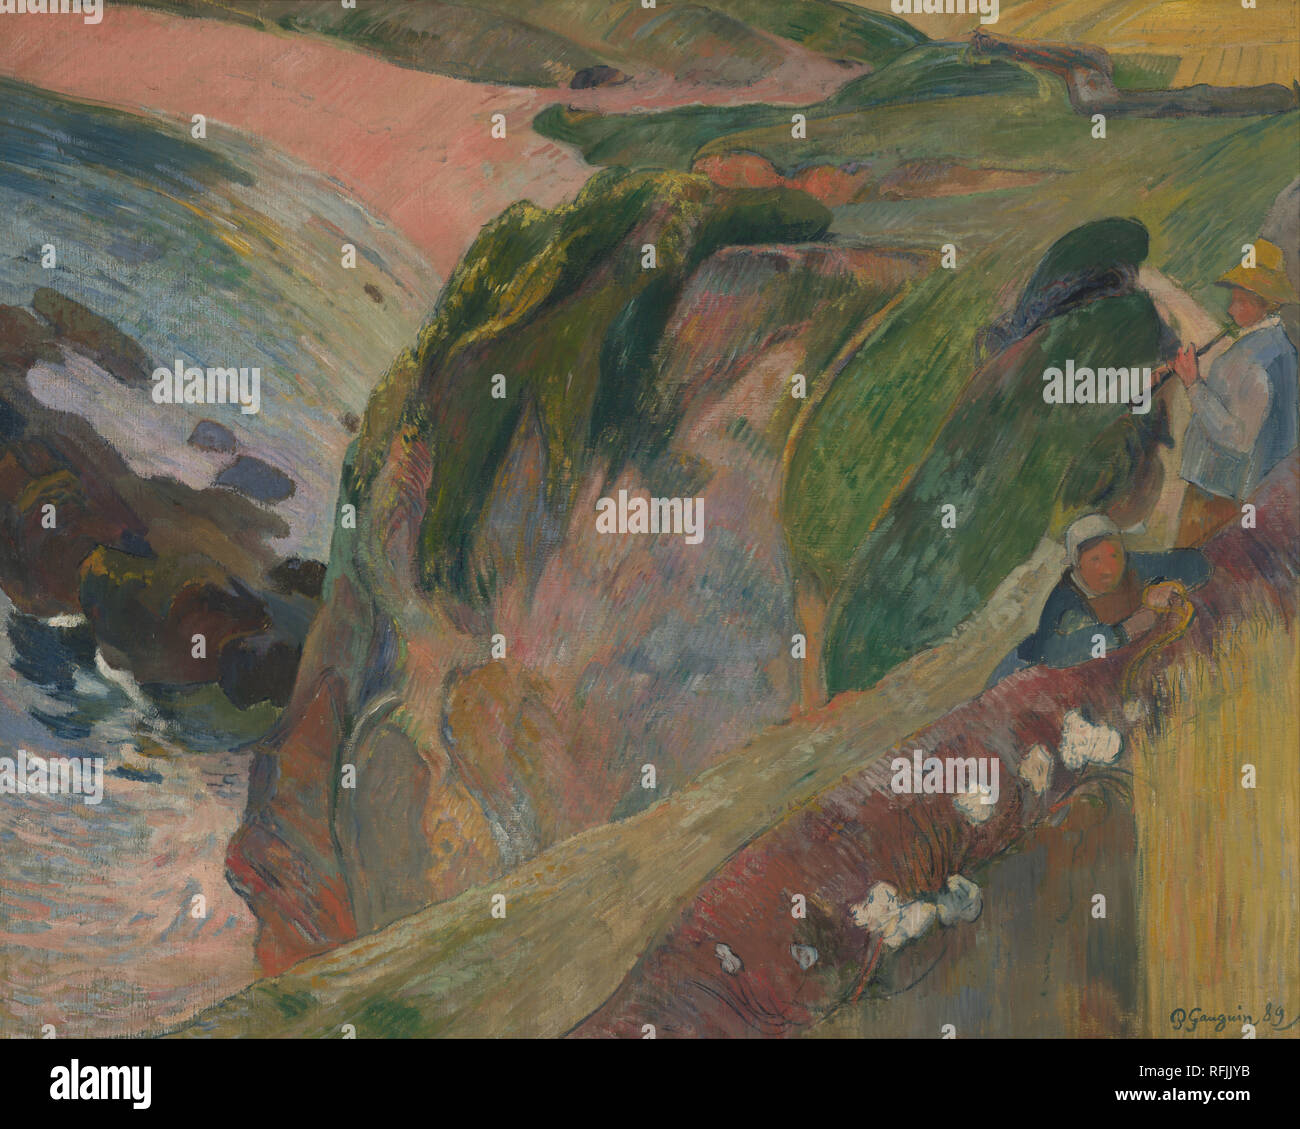 Le jouer de Flageolett/Das flageolett Spieler auf der Klippe. Datum/Zeitraum: 1889. Ölgemälde. Öl auf Leinwand. Höhe: 27.9 in (70,9 cm), Breite: 35,9, (91,2 cm). Autor: Paul Gauguin. Gauguin, Paul Eugéne Henri. Stockfoto